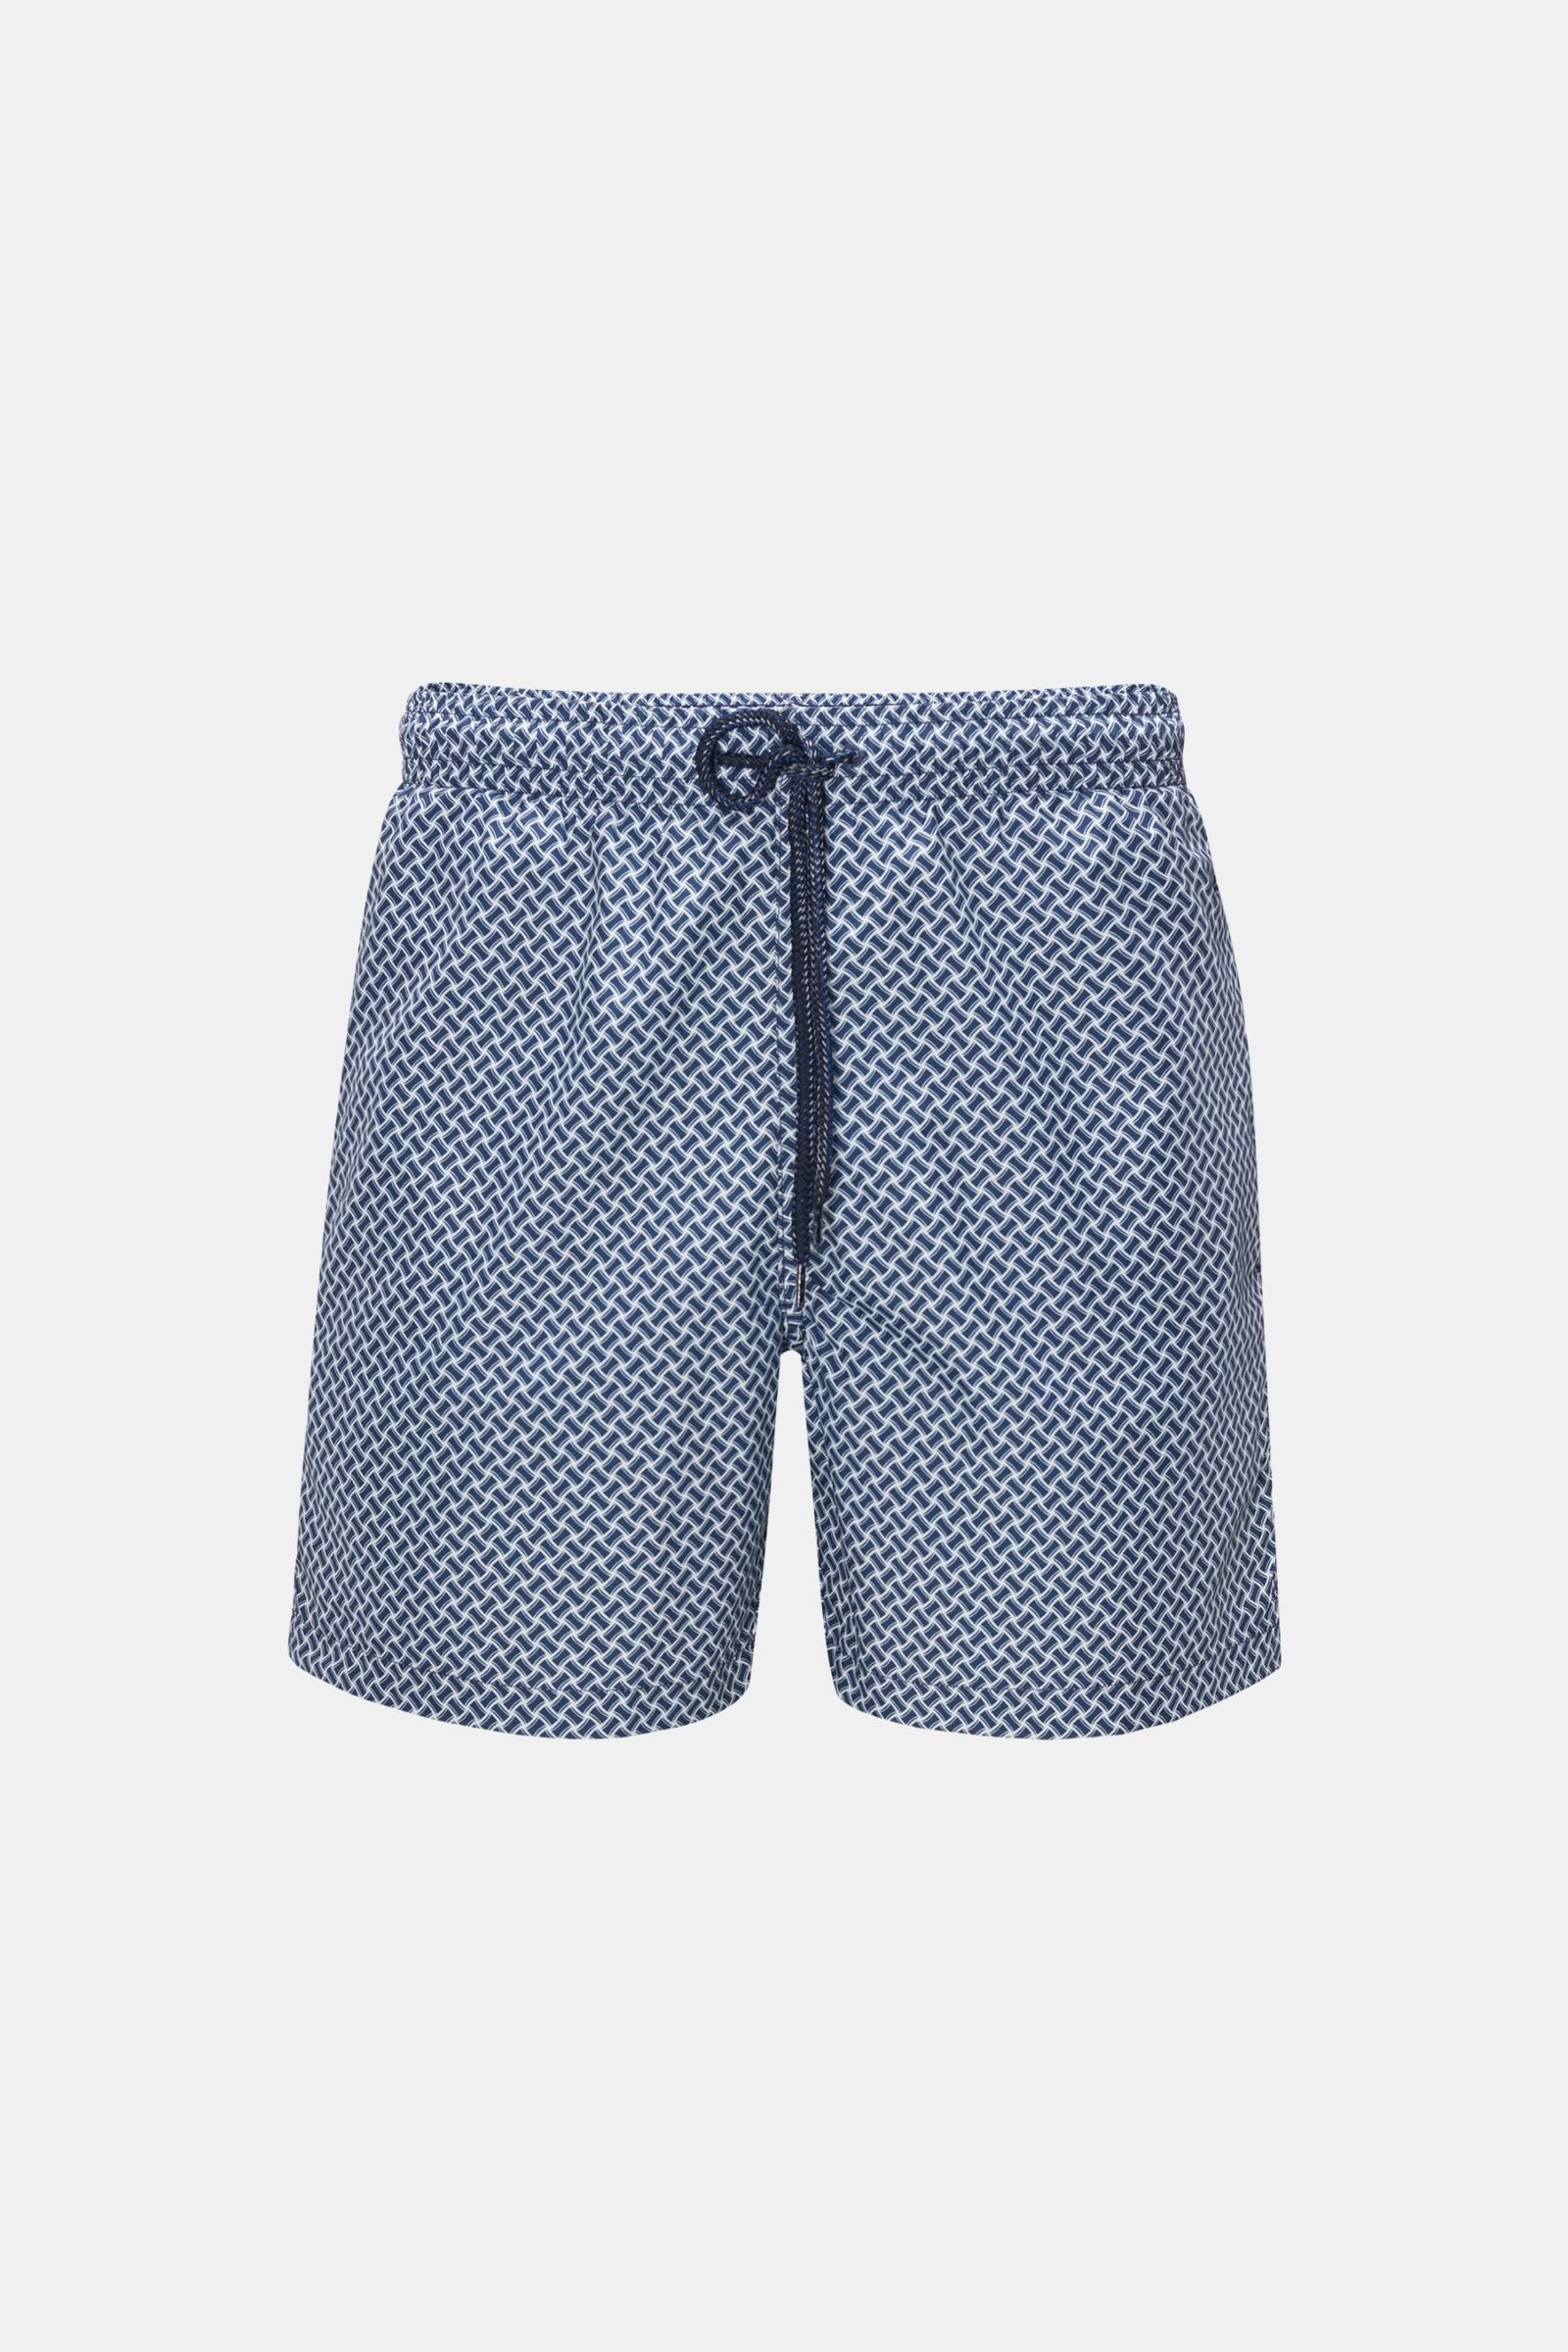 Swim shorts navy/white patterned 